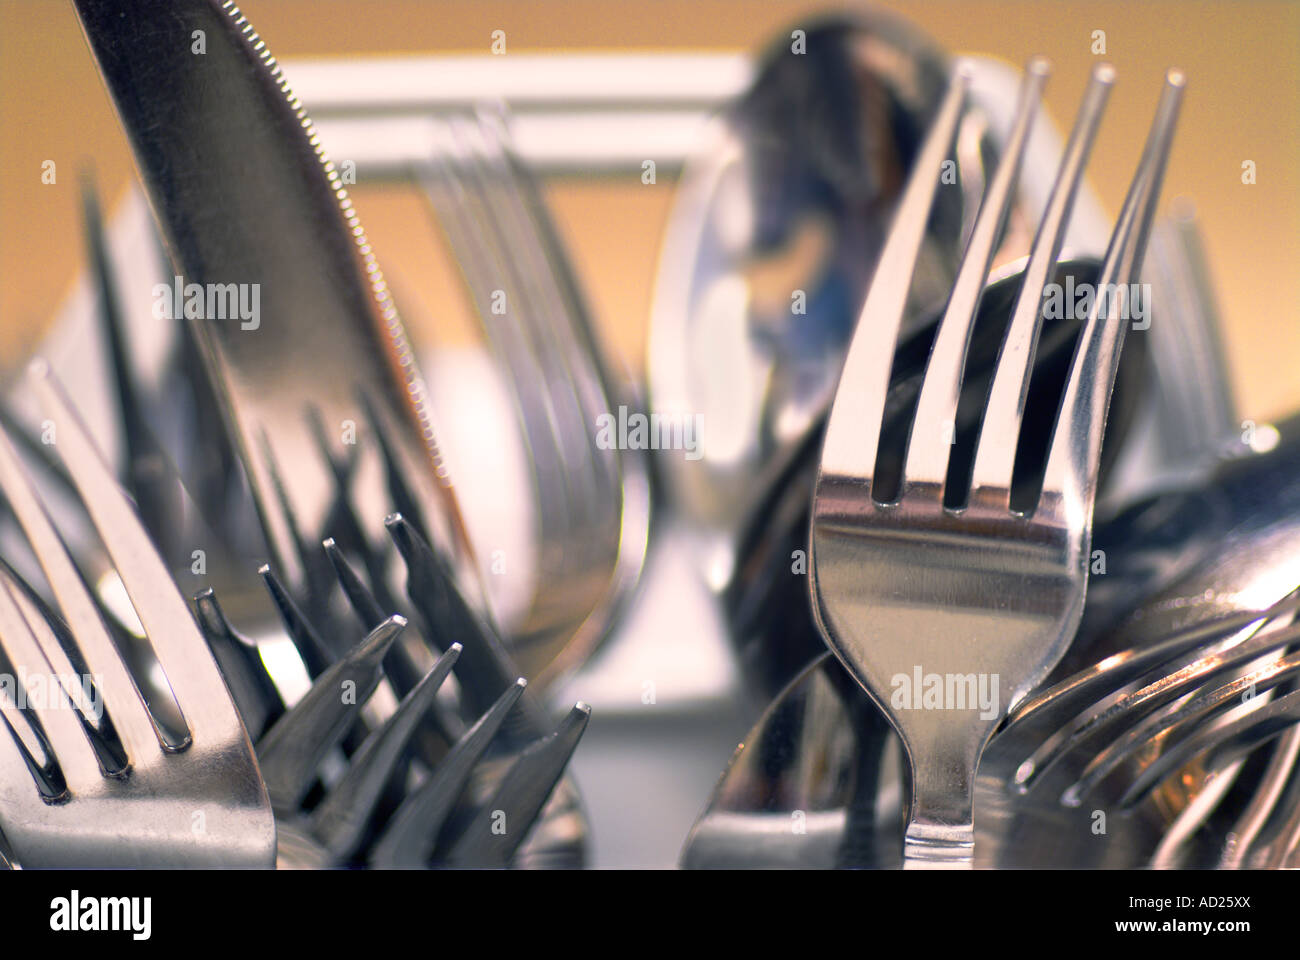 eating utensils Stock Photo